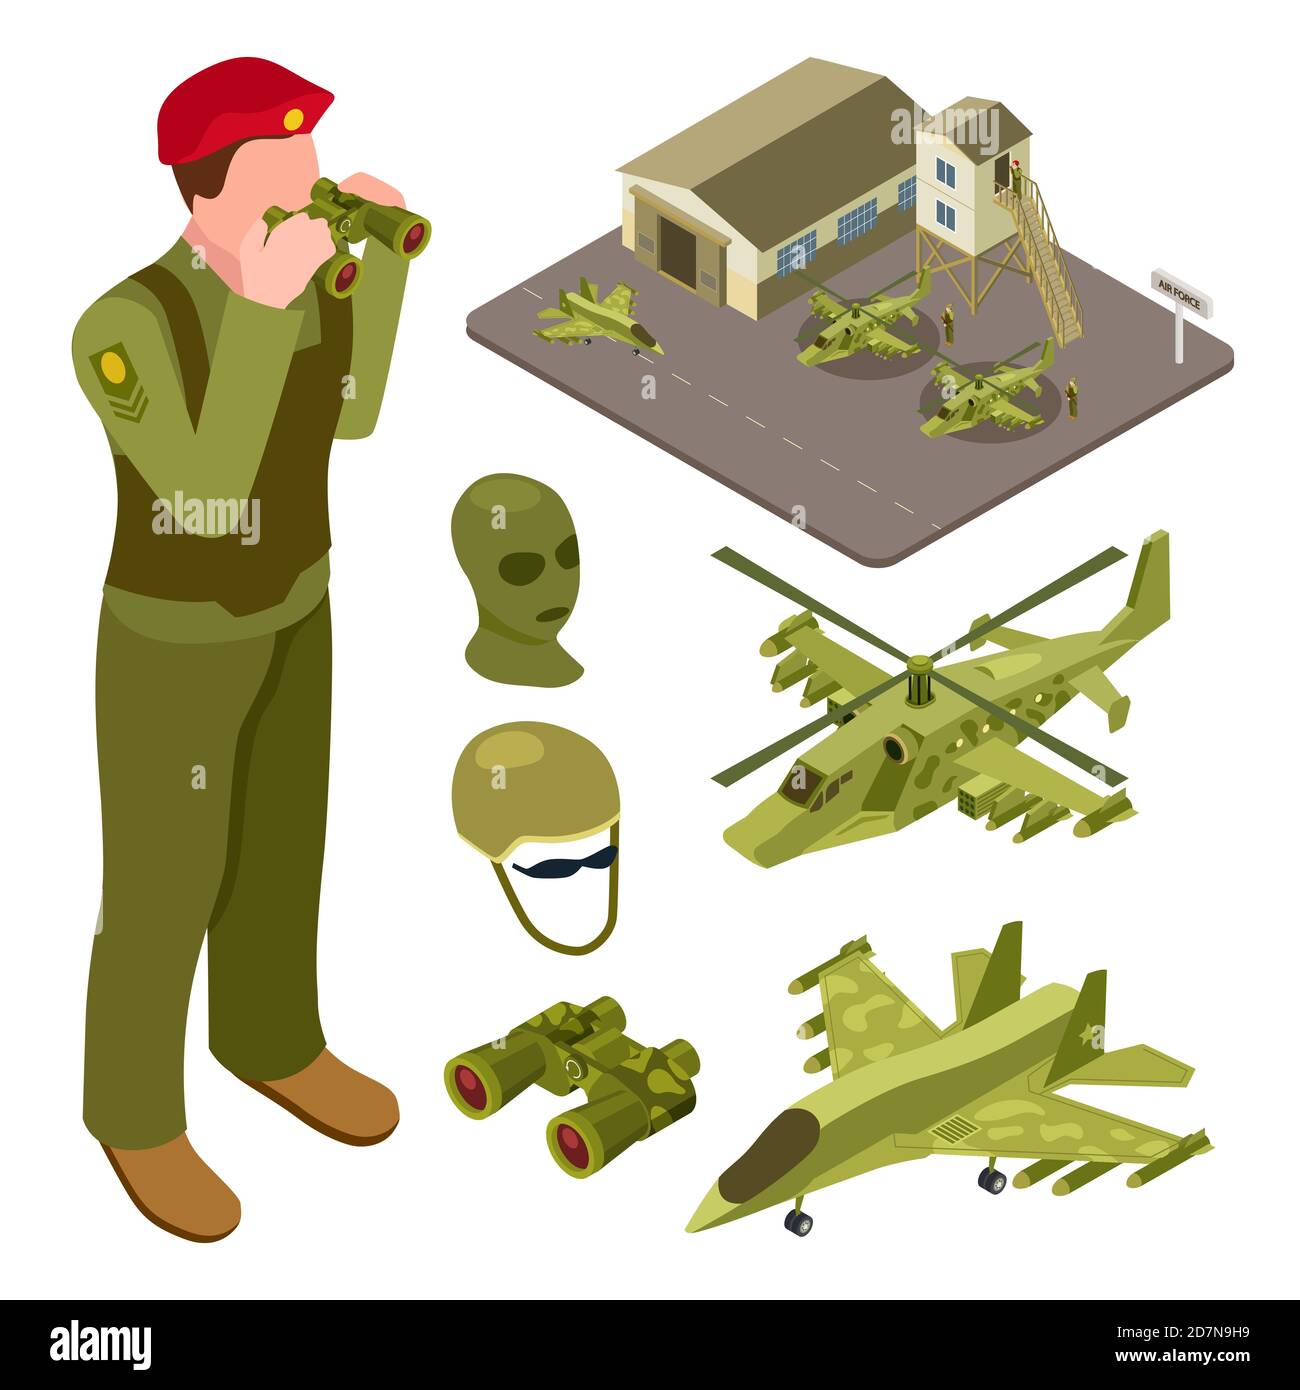 Base aérienne militaire isométrique avec hélicoptère, avion de chasse, illustration vectorielle des soldats. Avion isométrique militaire et de défense aérienne Illustration de Vecteur